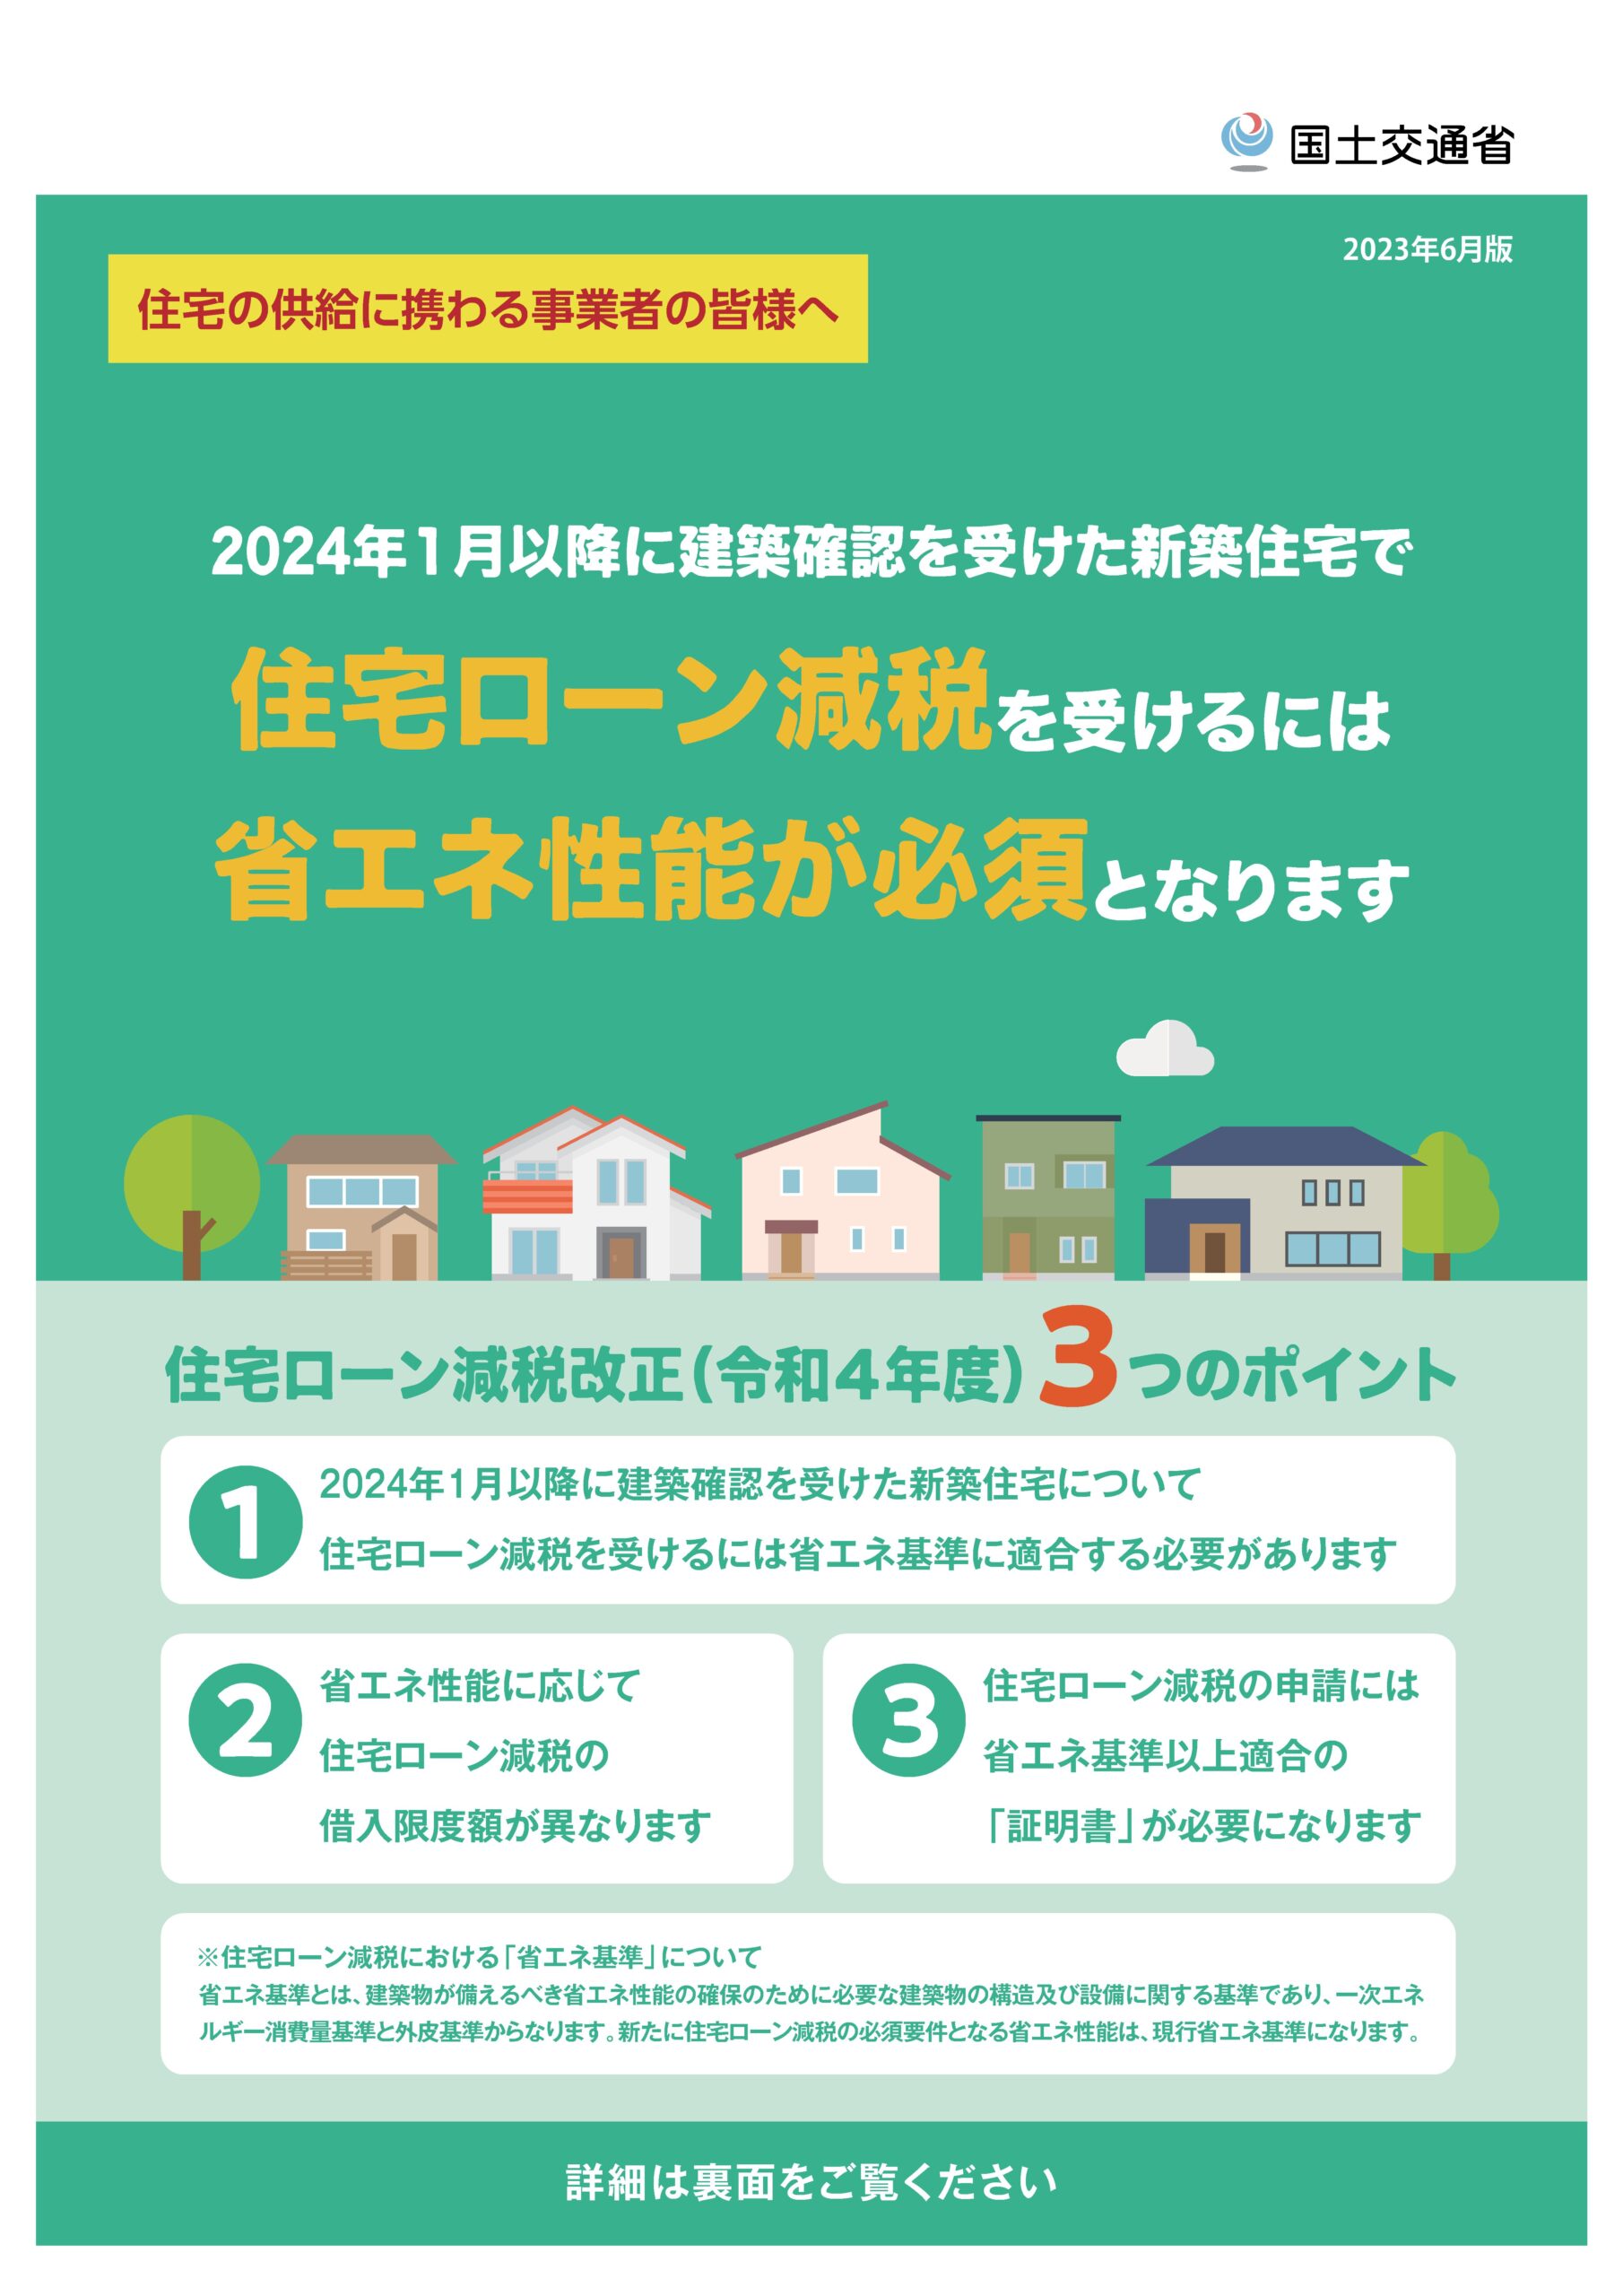 【国交省】「住宅取得に使える３つの支援策（広報用チラシ）」等を公表